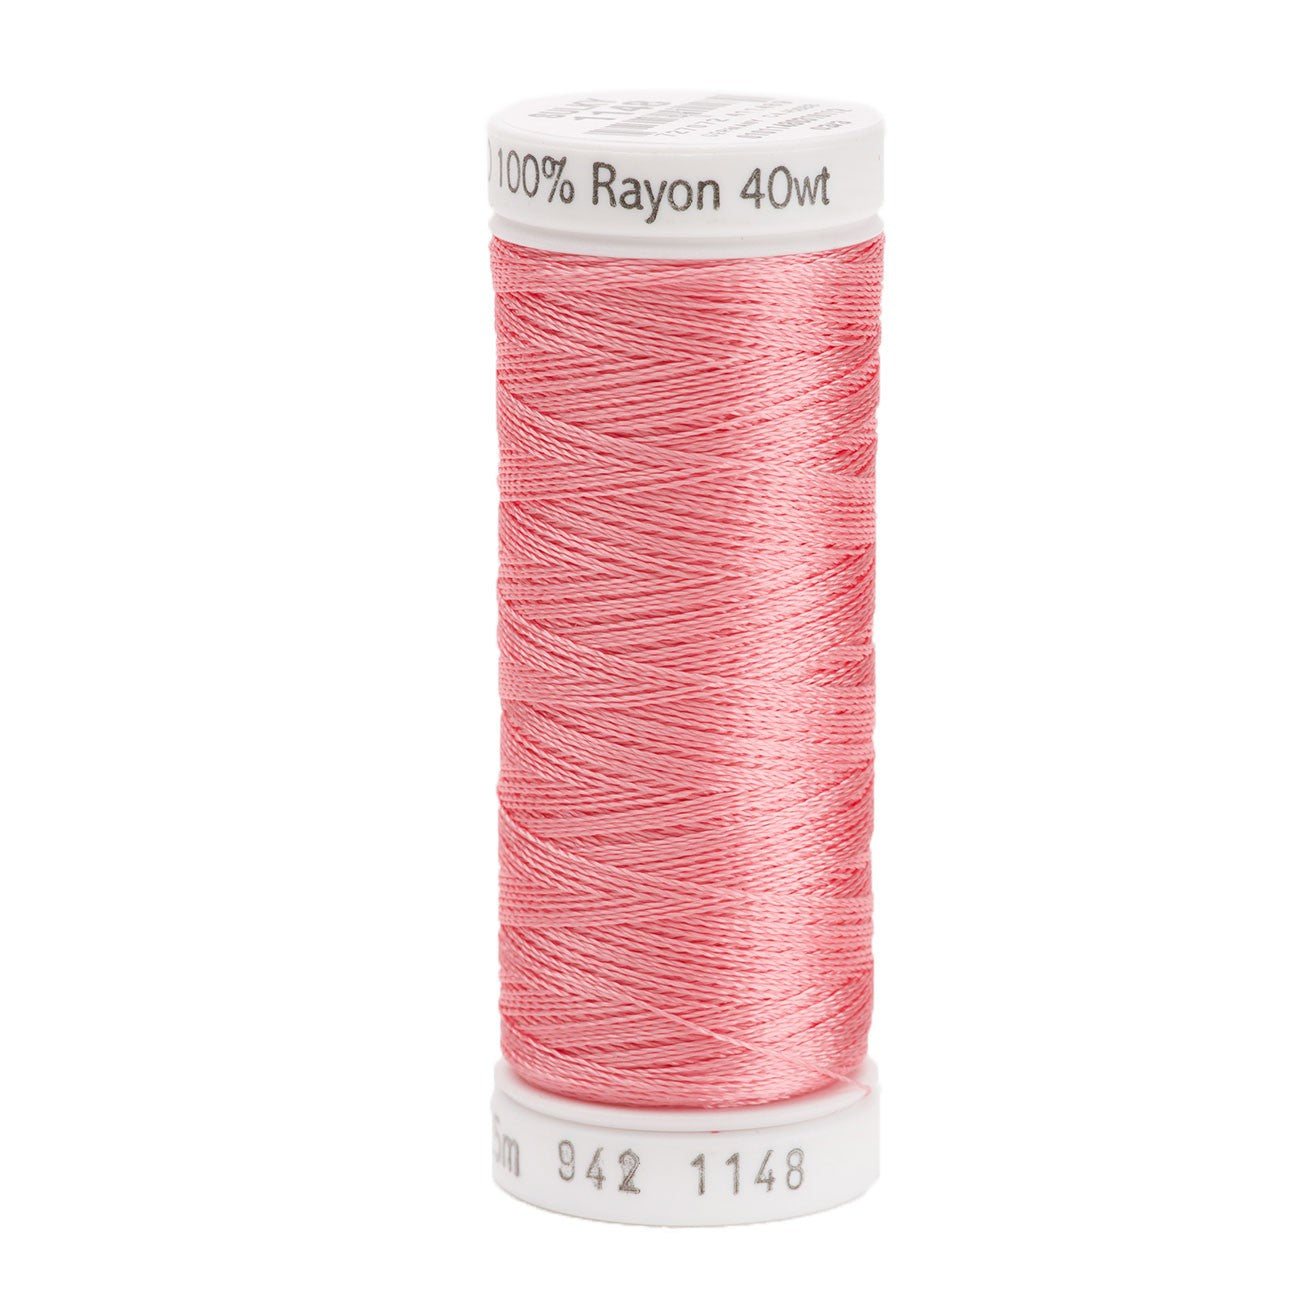 Sulky Rayon 40wt Thread 1148 Light Coral  250yd Spool